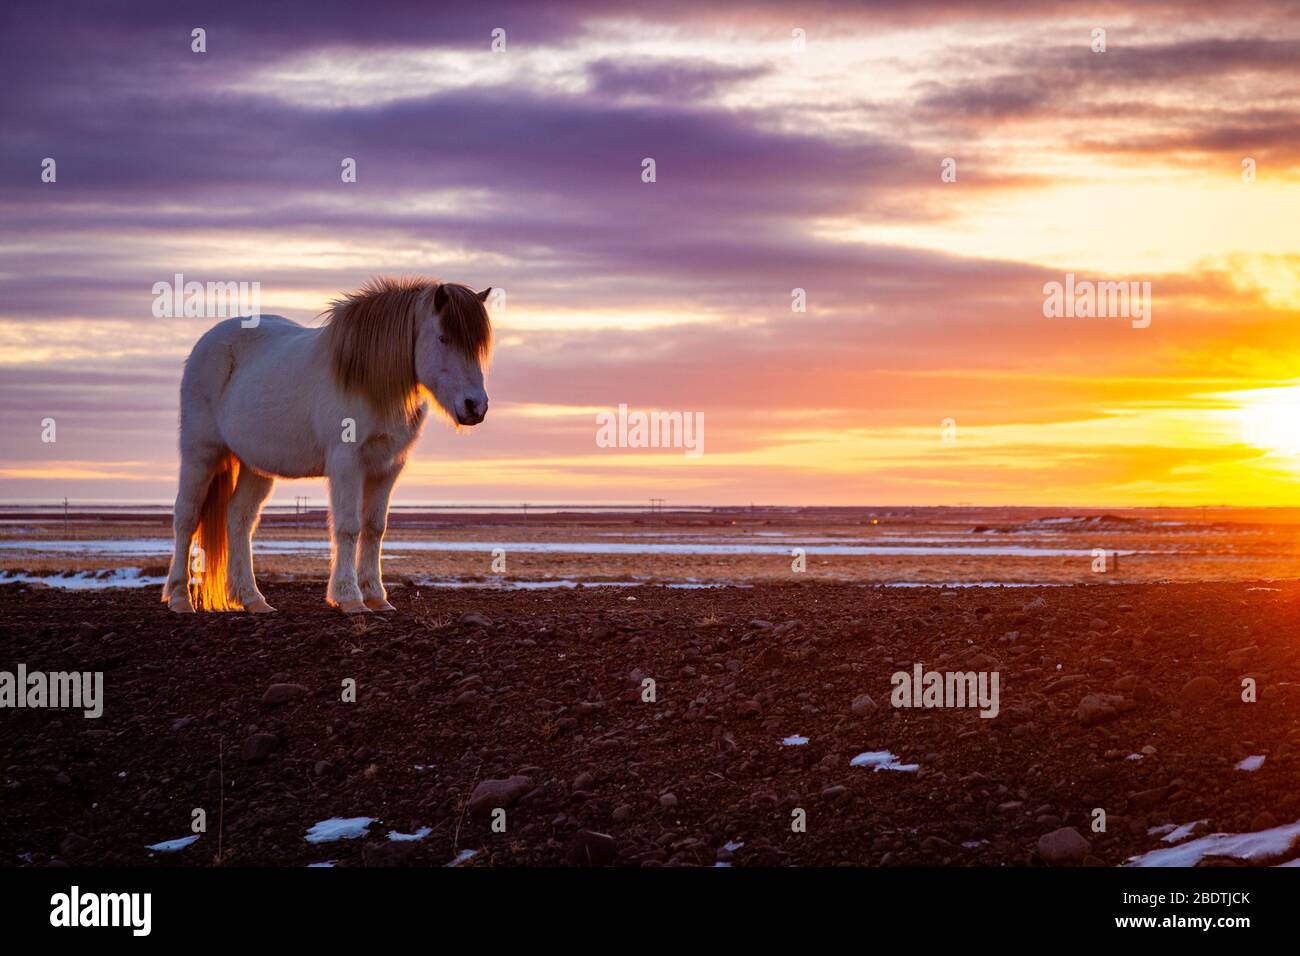 Cheval islandais (Equus ferus cavallus) au coucher du soleil dans le paysage islandais, Islande Banque D'Images